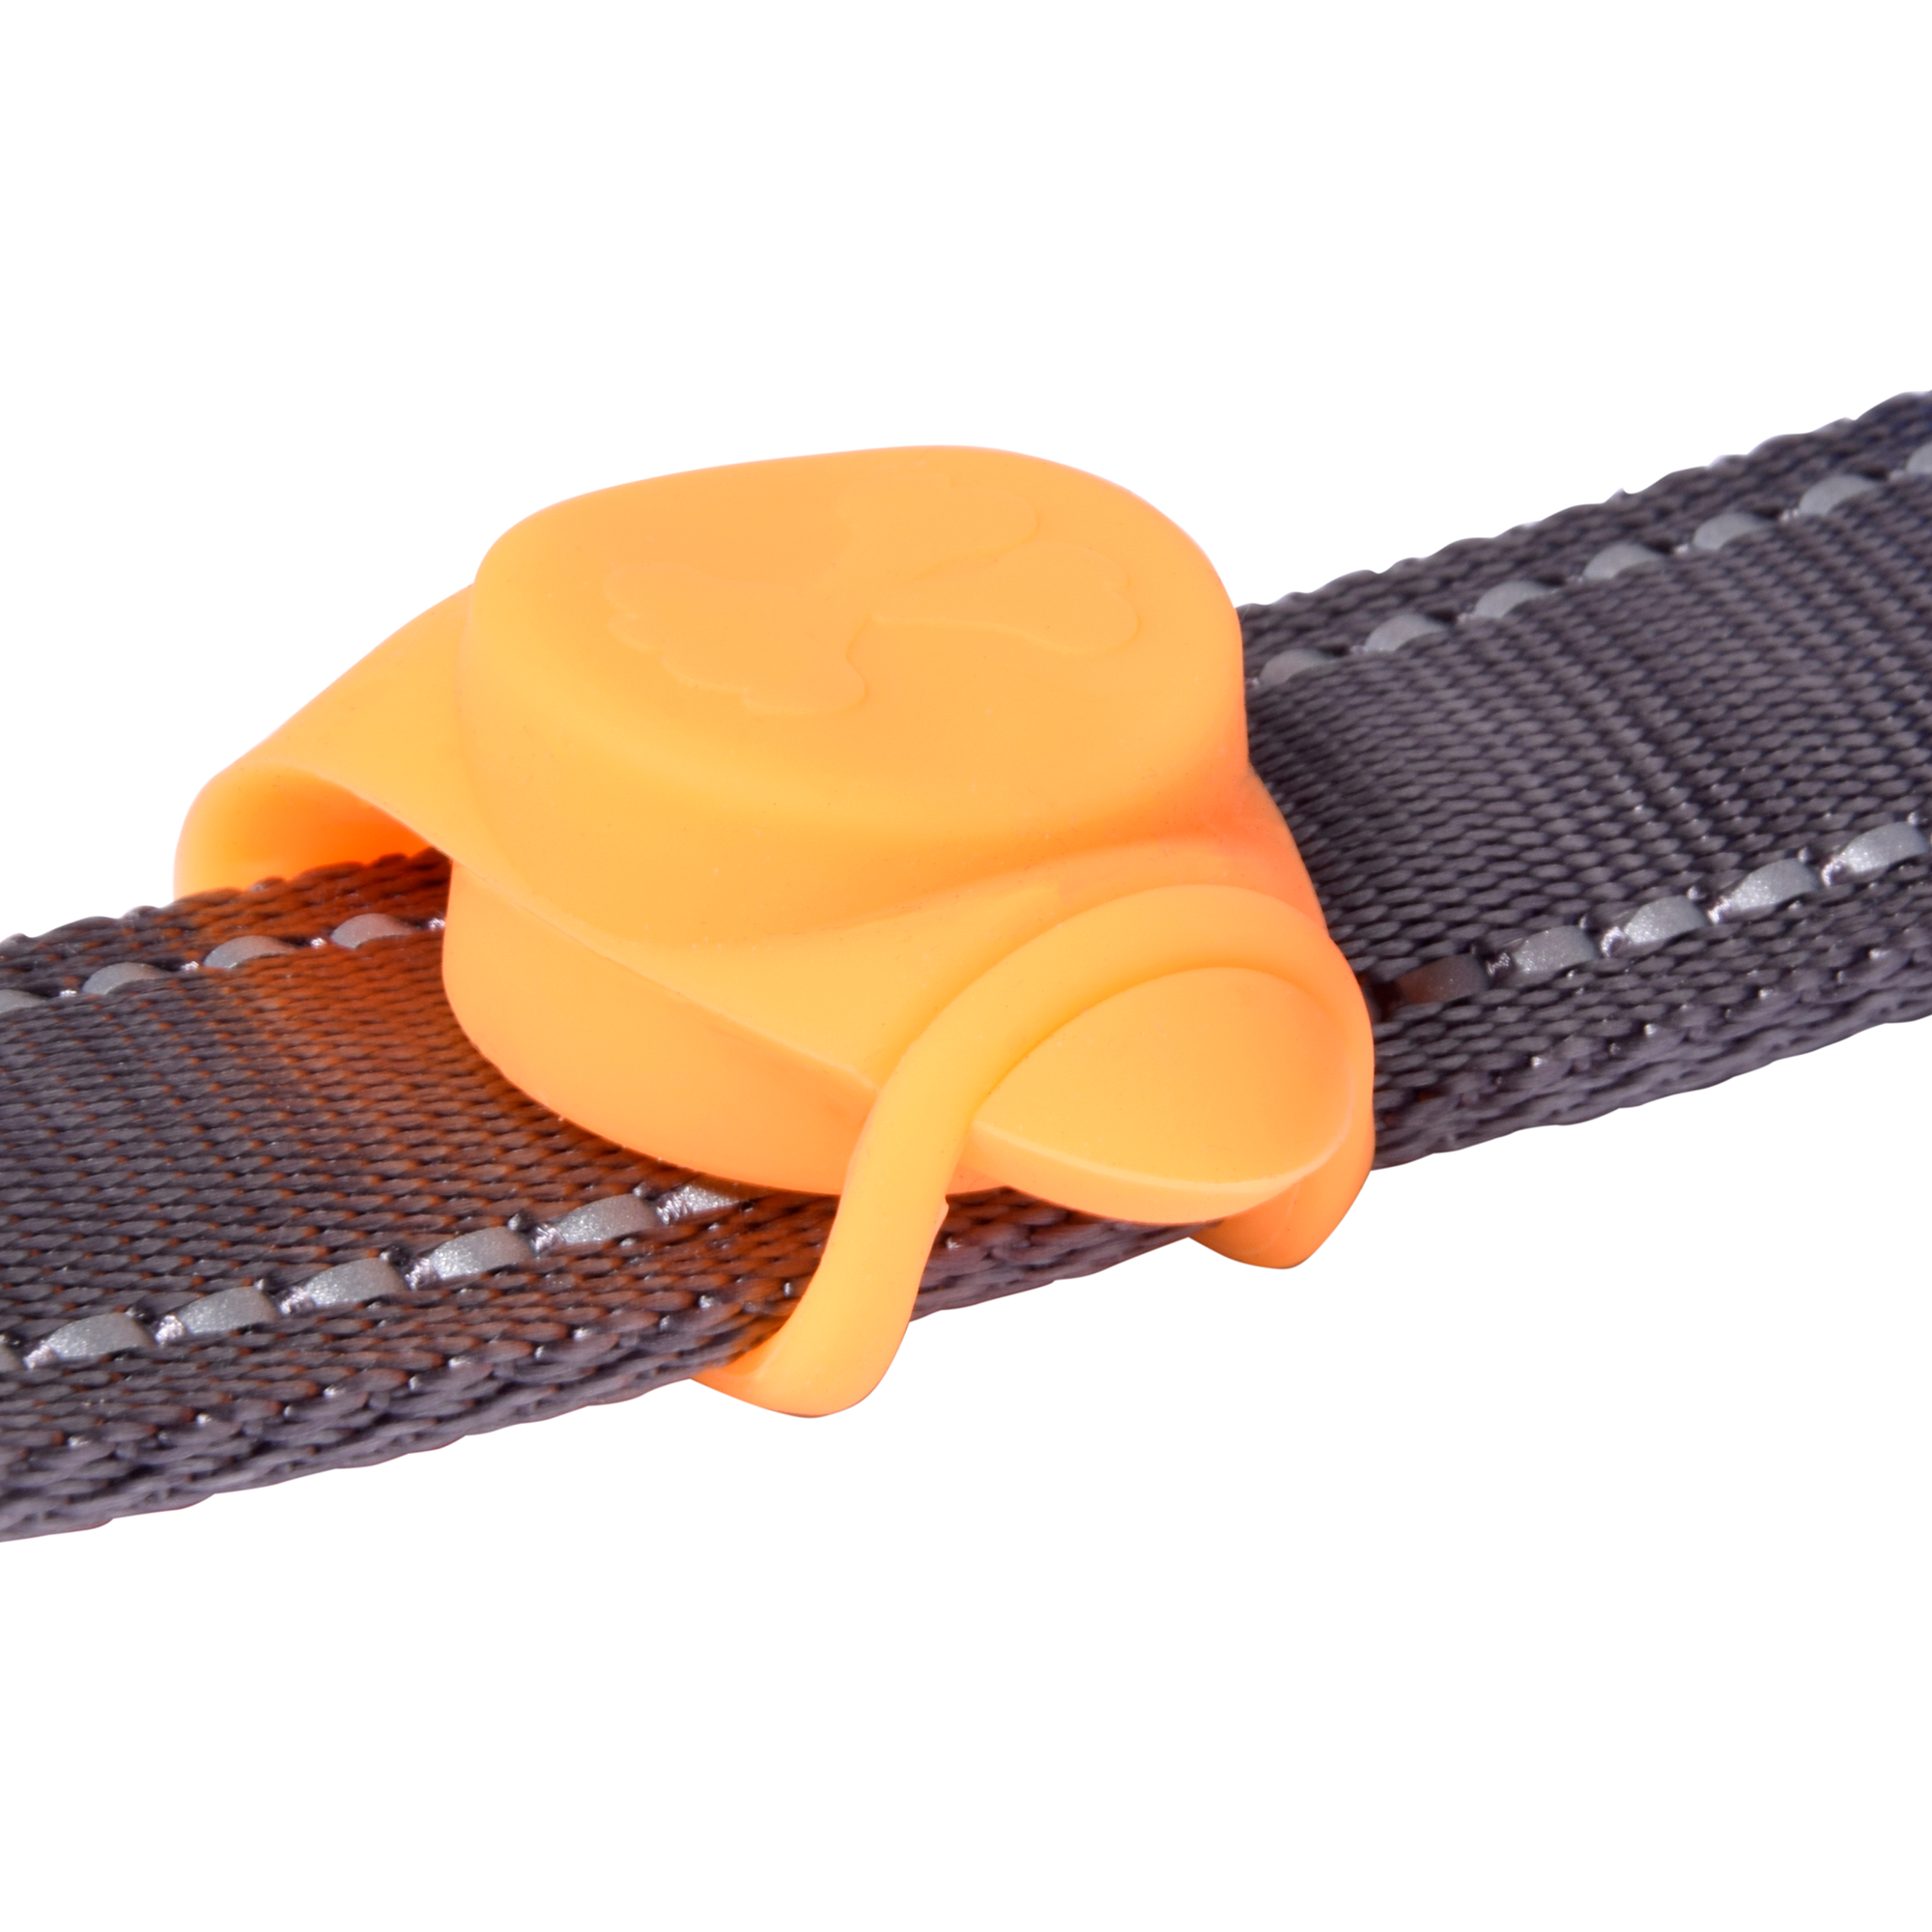 LED-Silikonblinker orange 8 cm + product picture